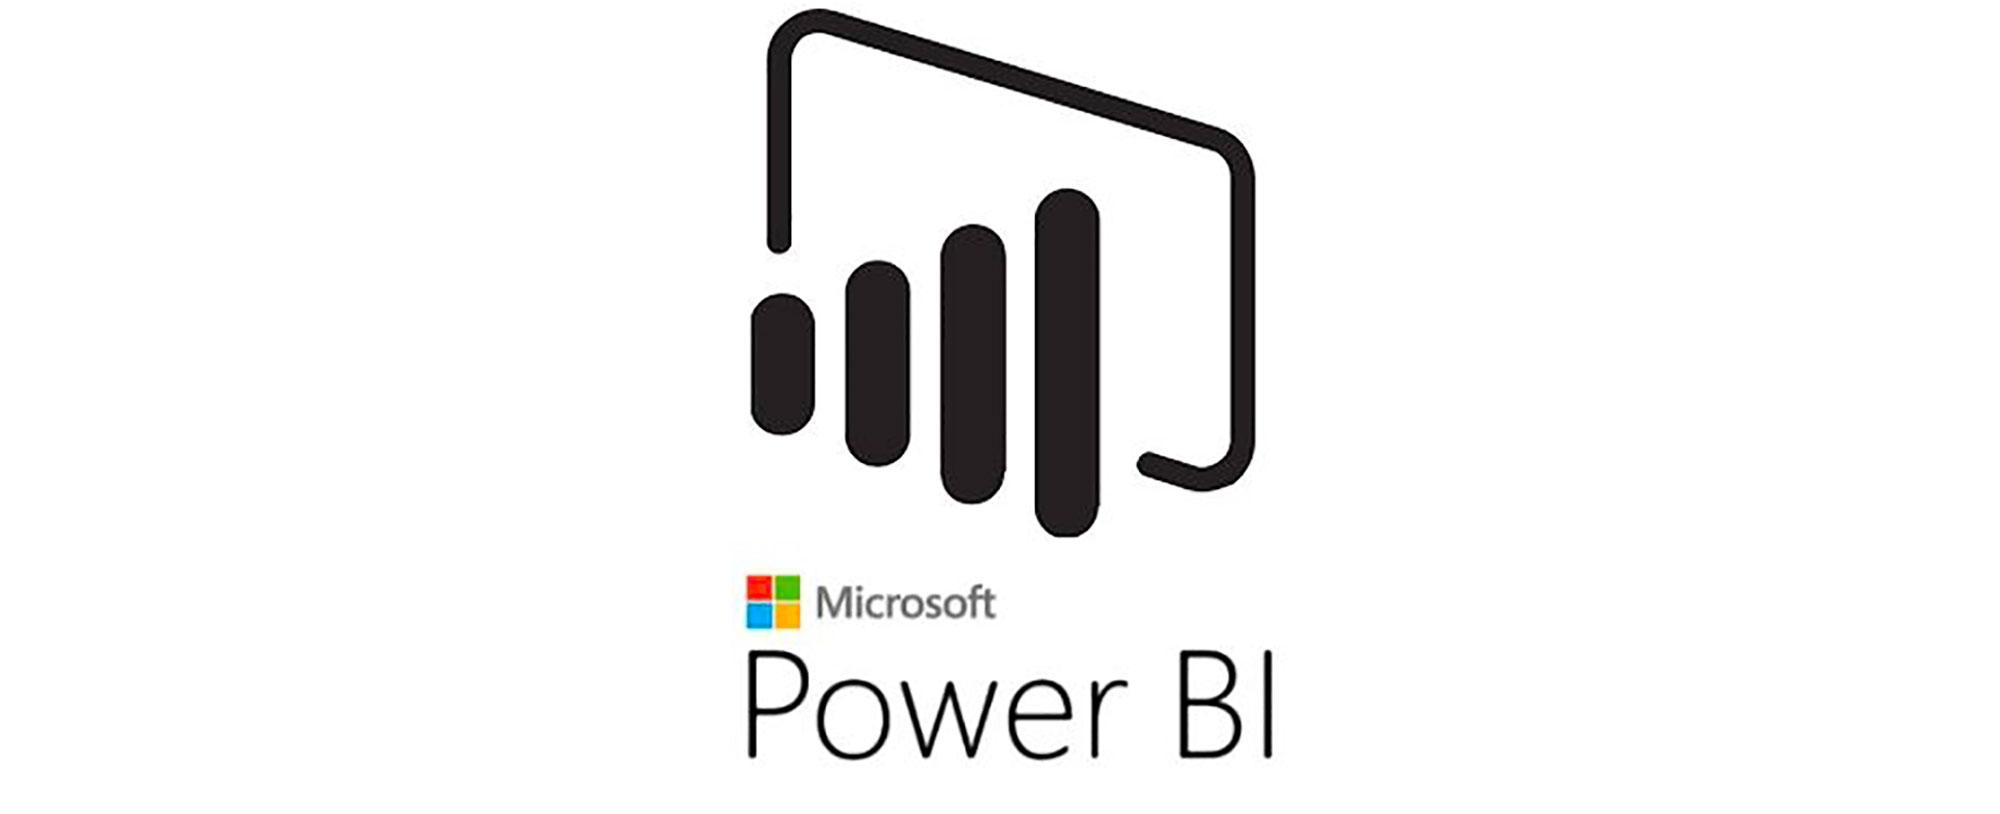 Power BI Logo - Microsoft Power BI Logo